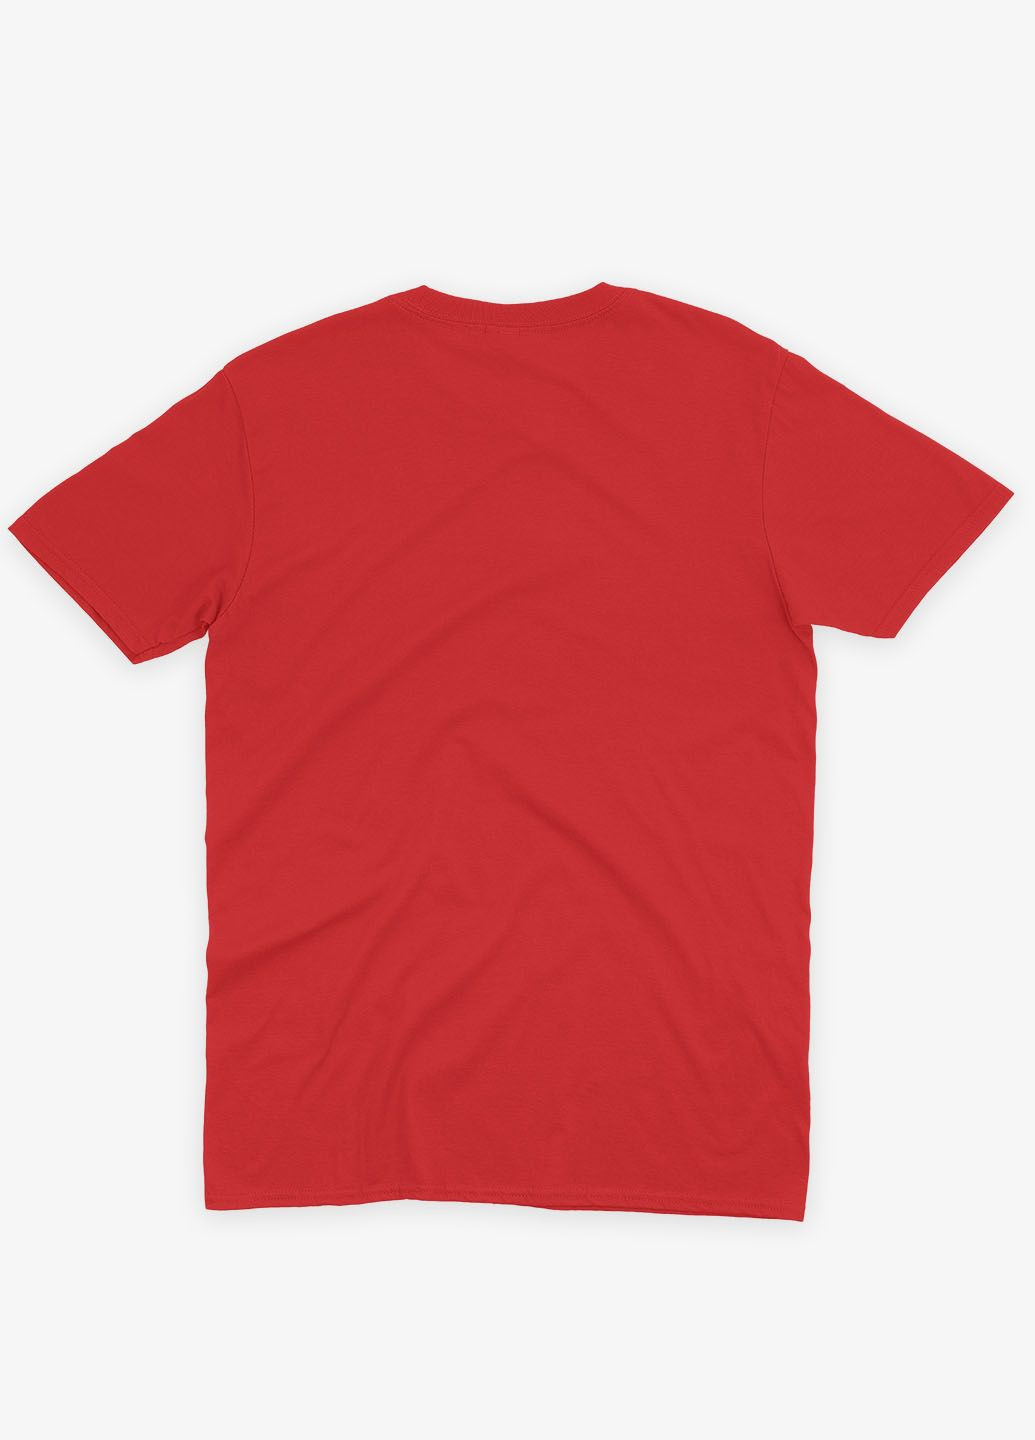 Красная демисезонная футболка для девочки с принтом супергероя - шазам (ts001-1-sre-006-012-002-g) Modno